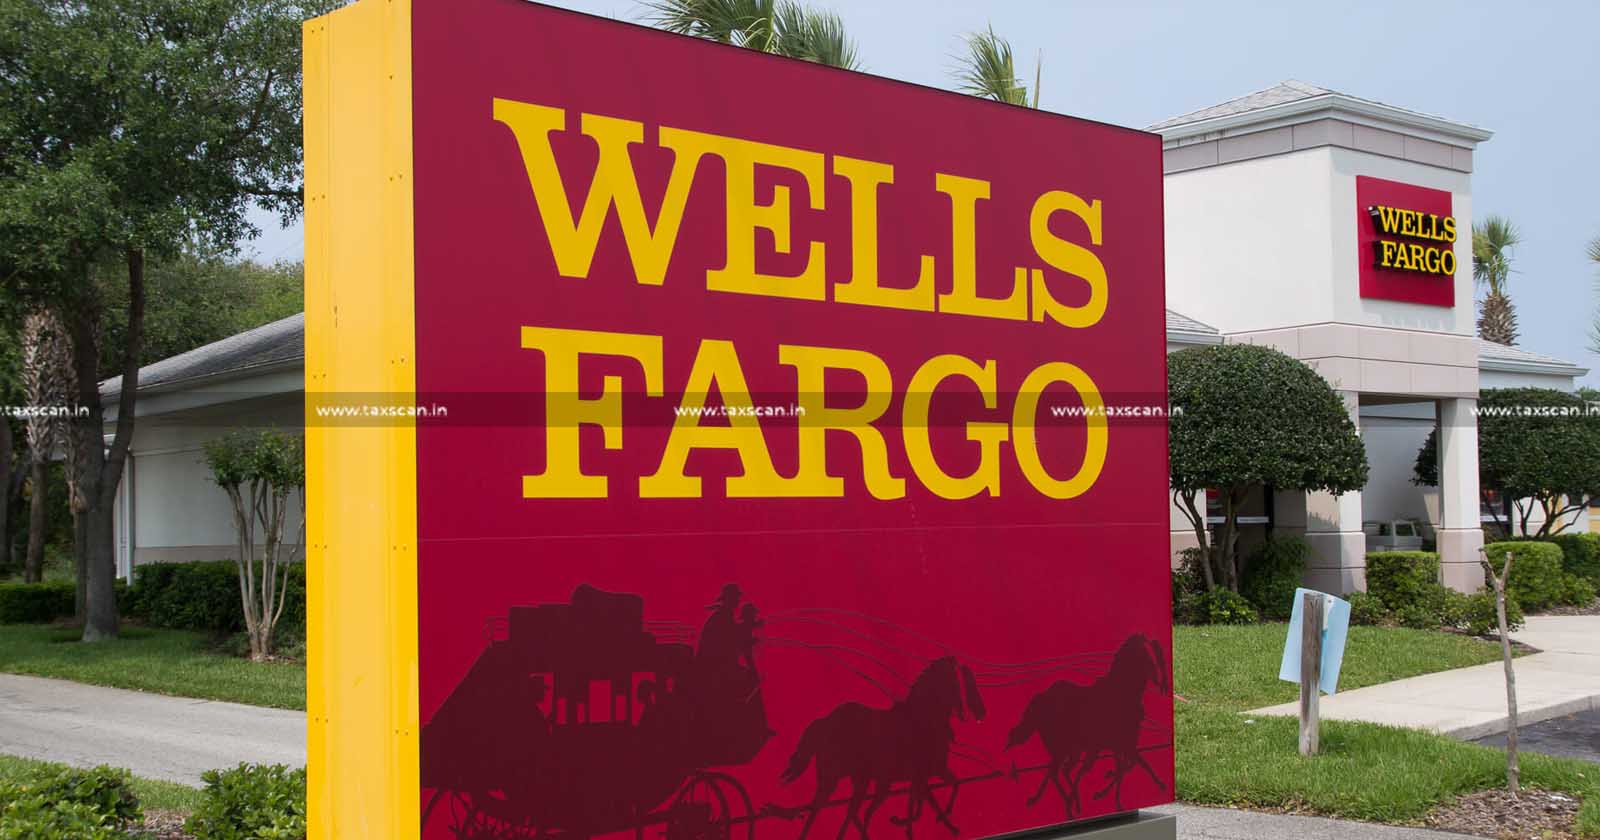 CA - job - hiring - vacancy - Wells Fargo - jobscan